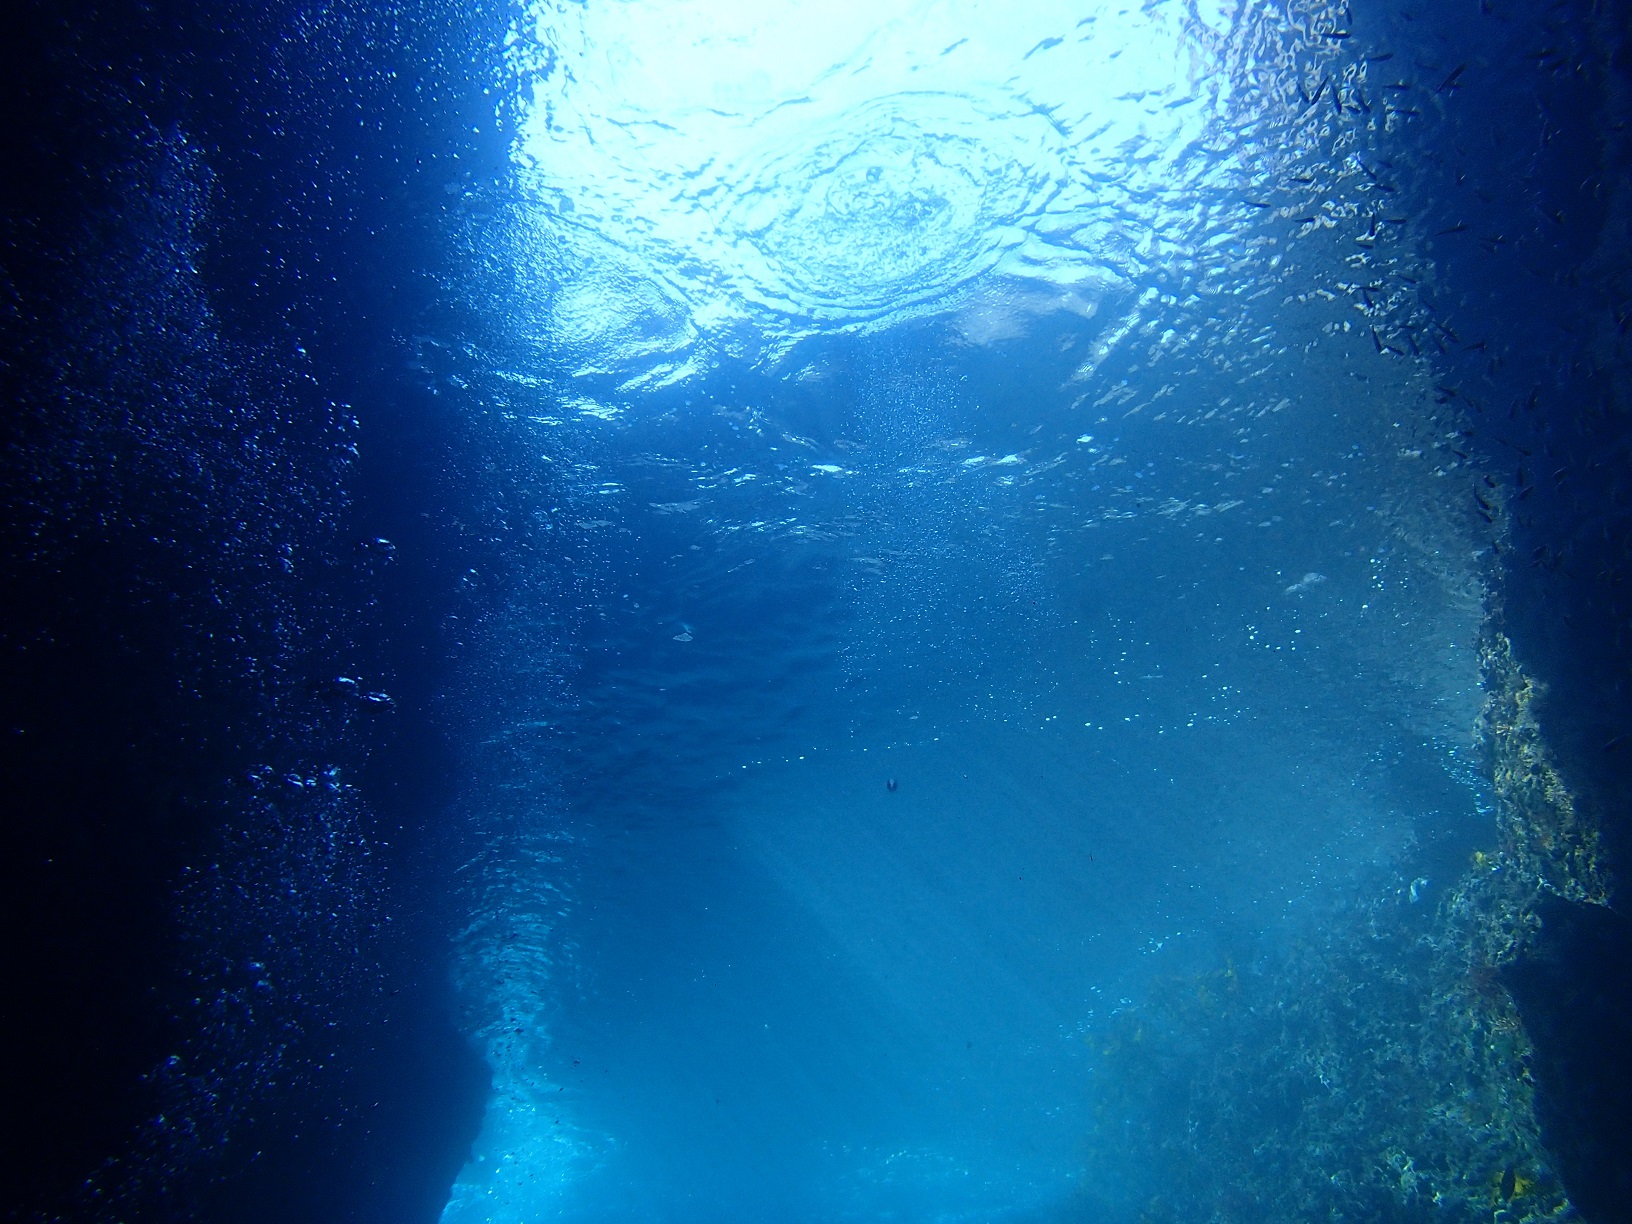 海中から見た『青の洞窟』。ダイバー目線の洞窟内の光のグラデーションは青く、海面が揺らめくたびに光が揺らめき、陸上では拝めない美しい世界。場所は『熱海』。世界各地、日本各地に『青の洞窟』は点在している✨